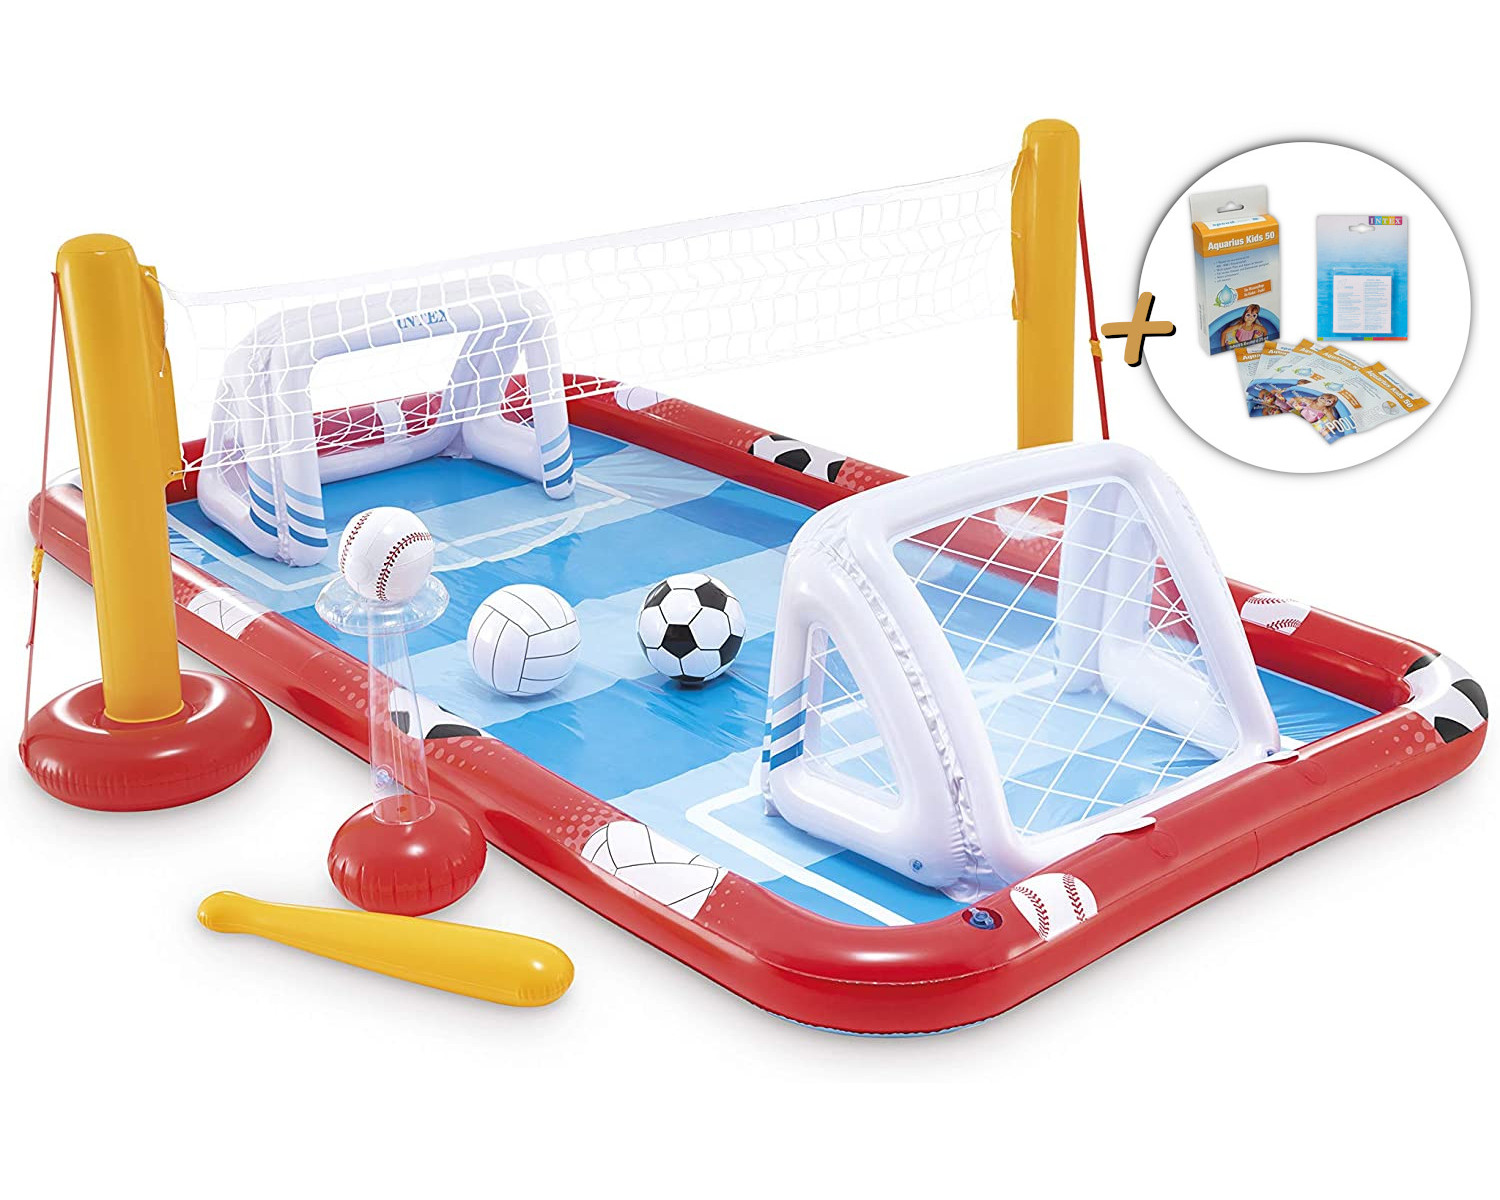 INTEX Playcenter - Action Sports mehrfarbig Wasserpflege + Reparaturflicken & (325x267x102cm) Playcenter, Planschbecken